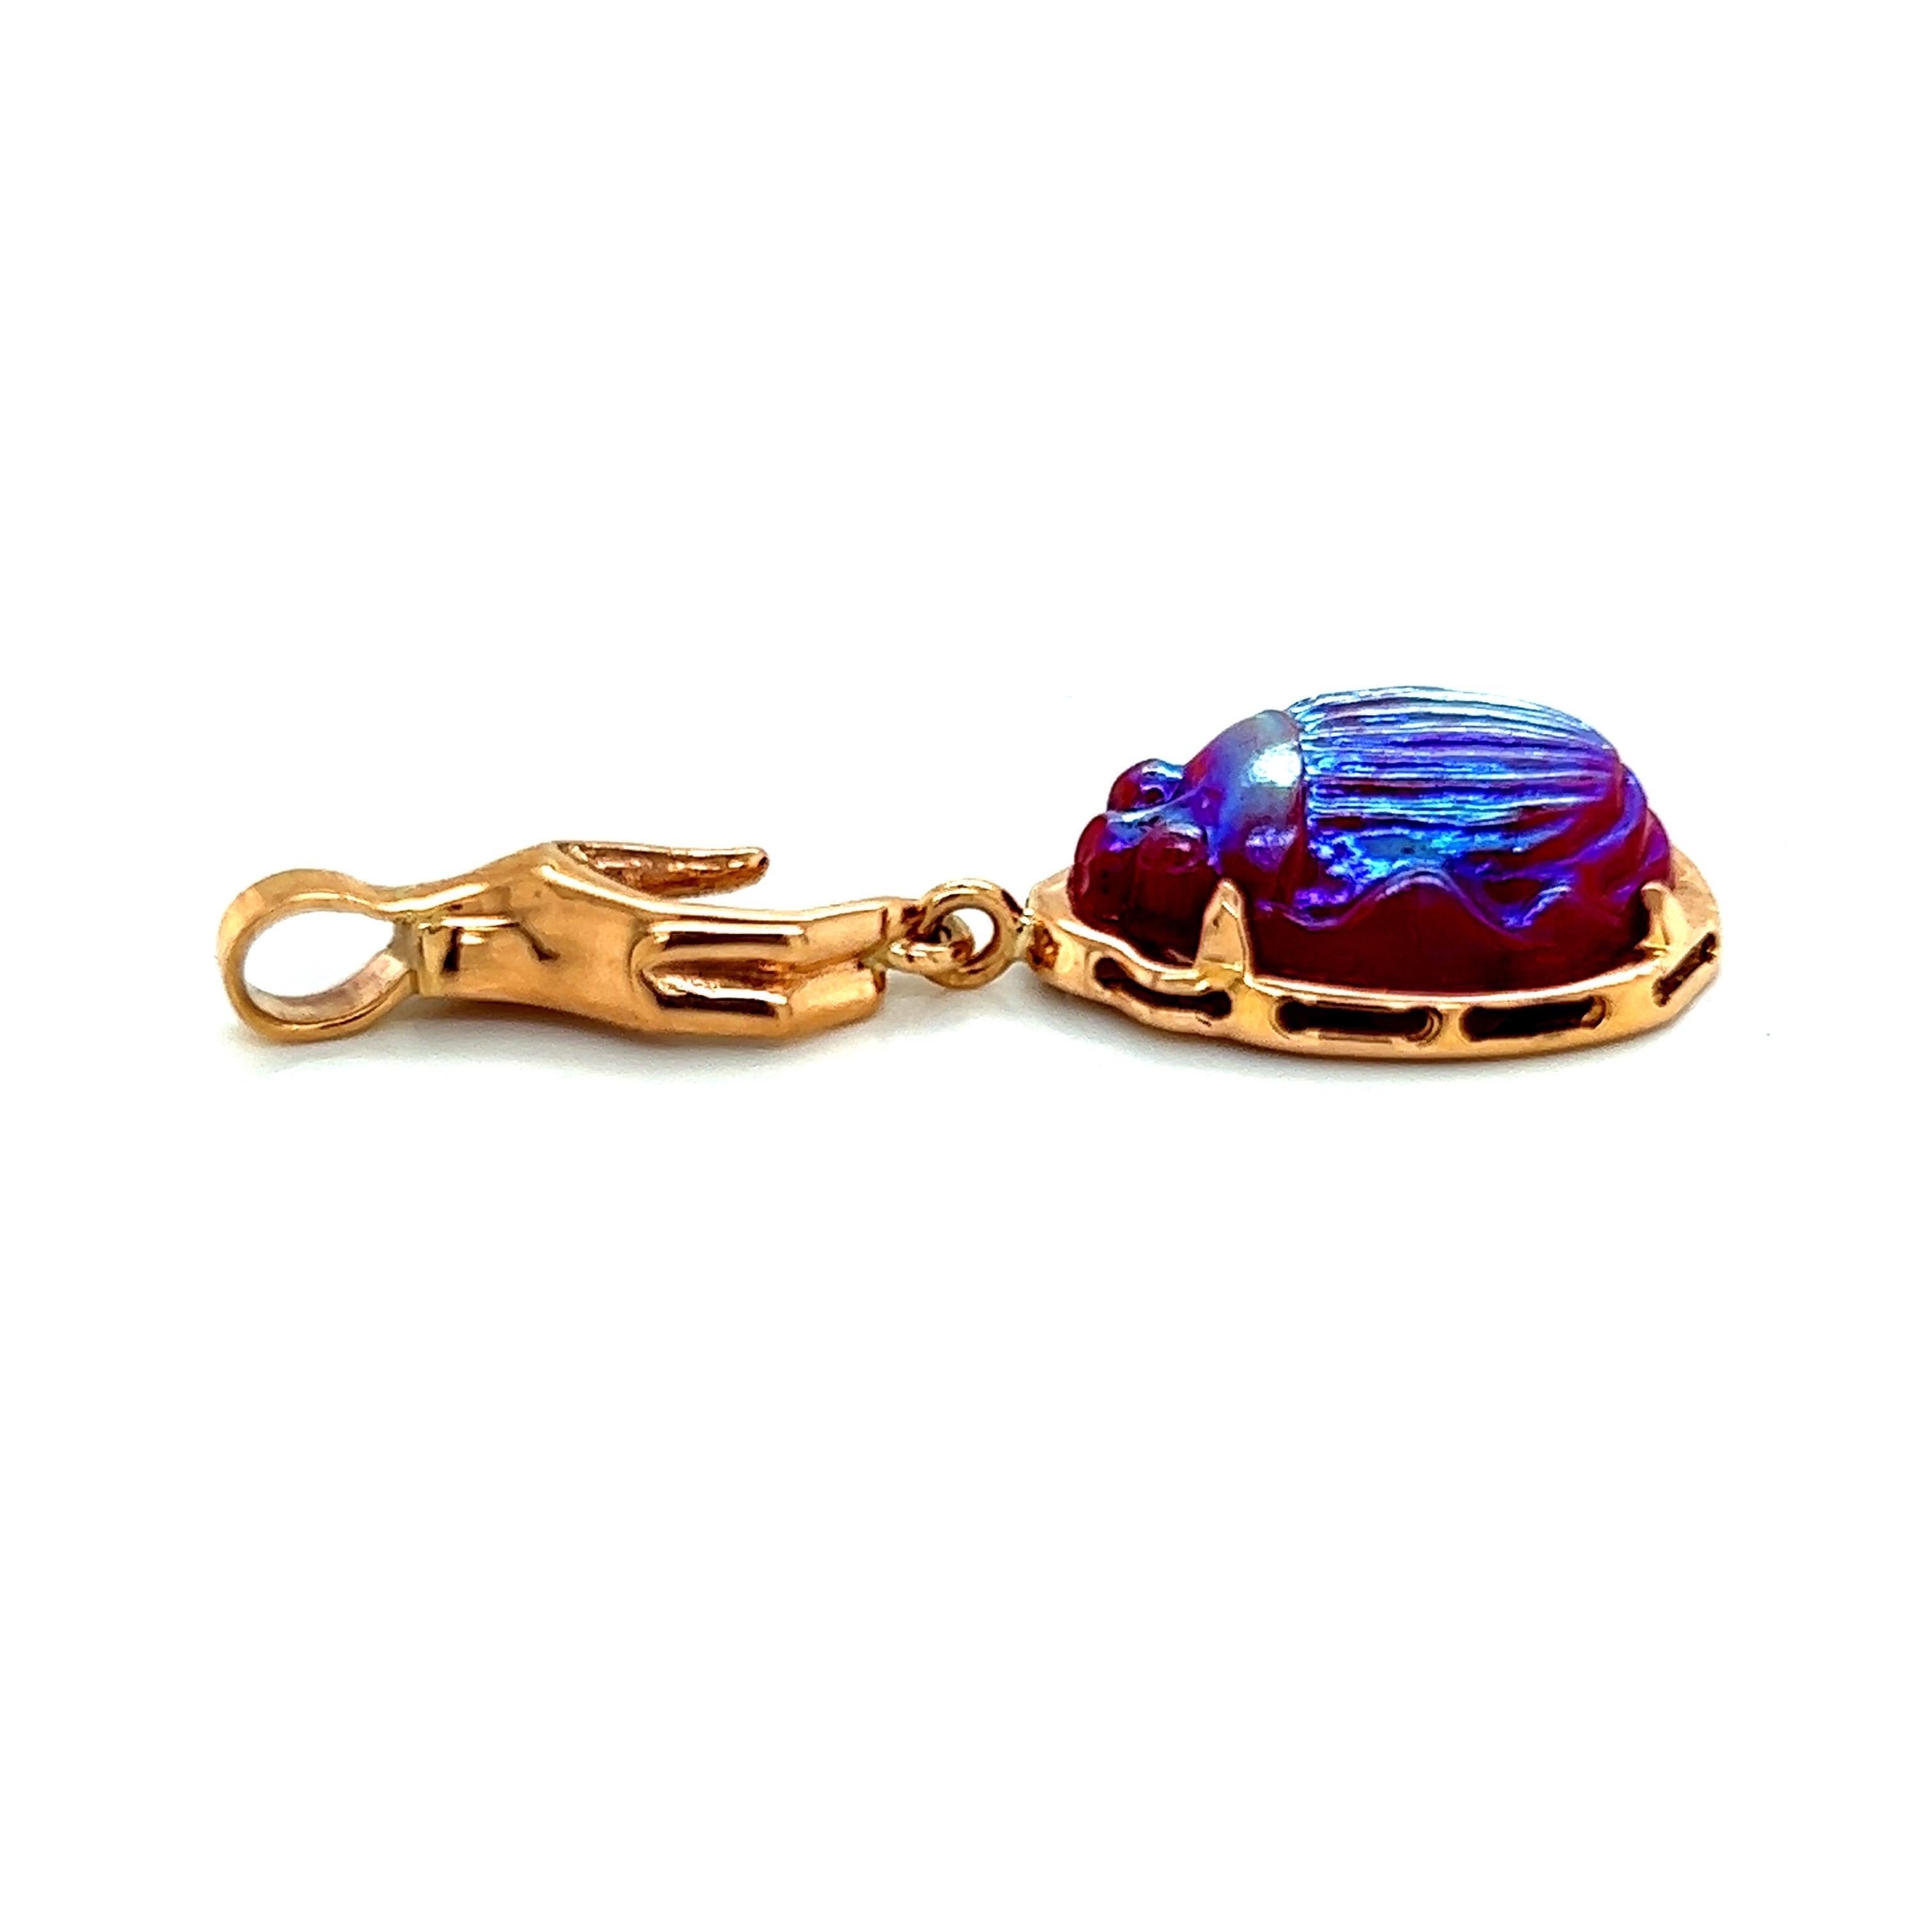 Le pendentif en or rose 18 carats représentant une main tenant un scarabée en verre Tiffany vintage rouge irisé est un bijou vraiment unique et saisissant. Le pendentif est fabriqué en or rose 18 carats de haute qualité, ce qui lui confère une